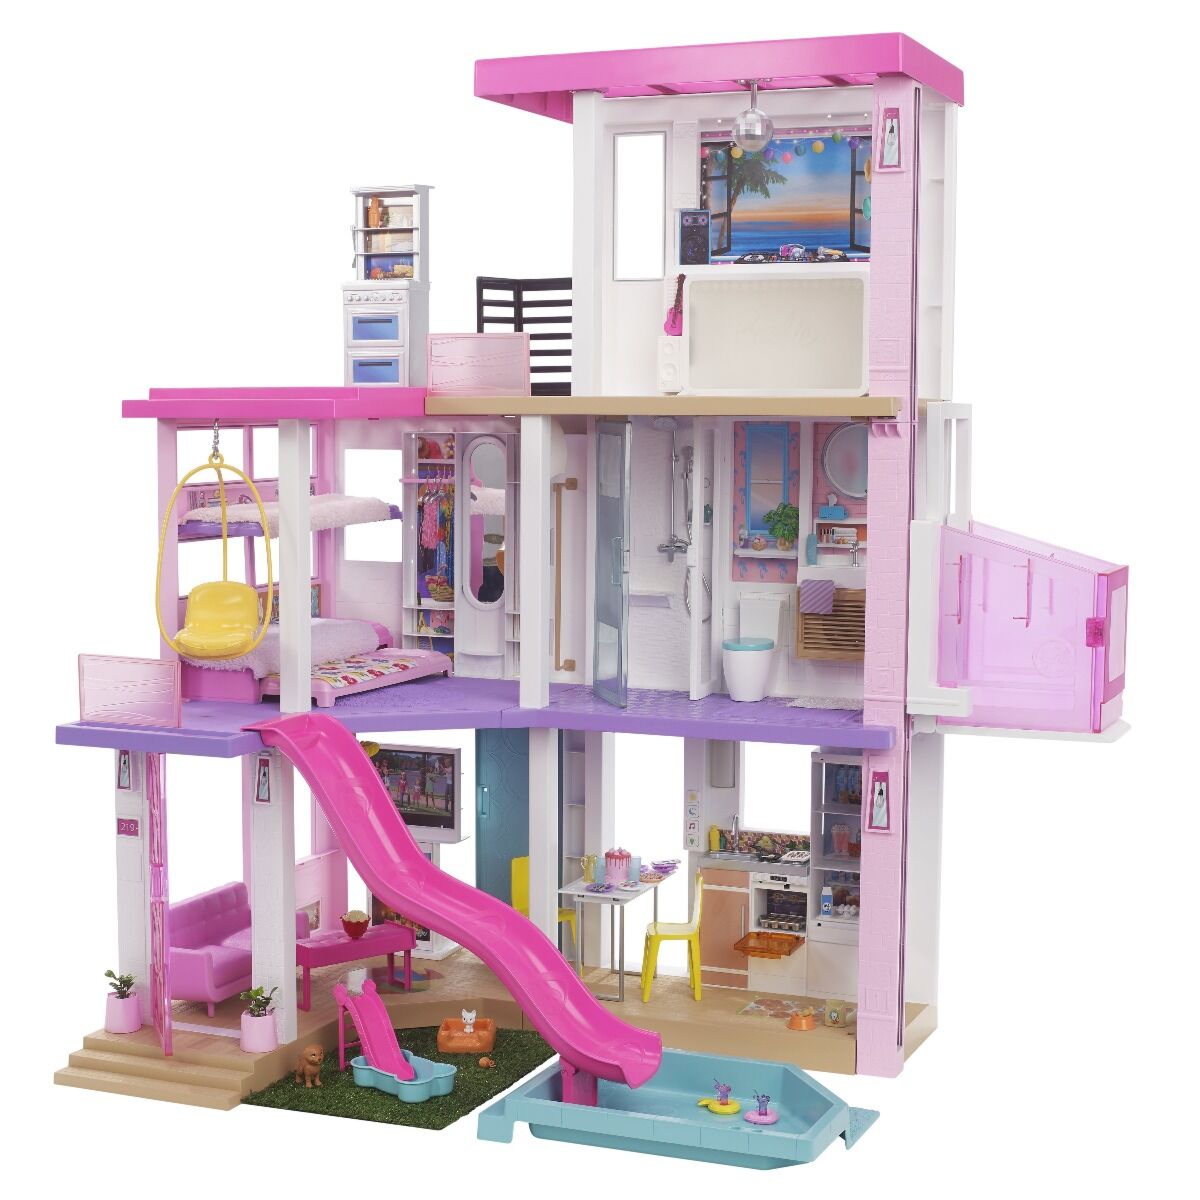 Игра Барби: жизнь в доме мечты - играть онлайн бесплатно